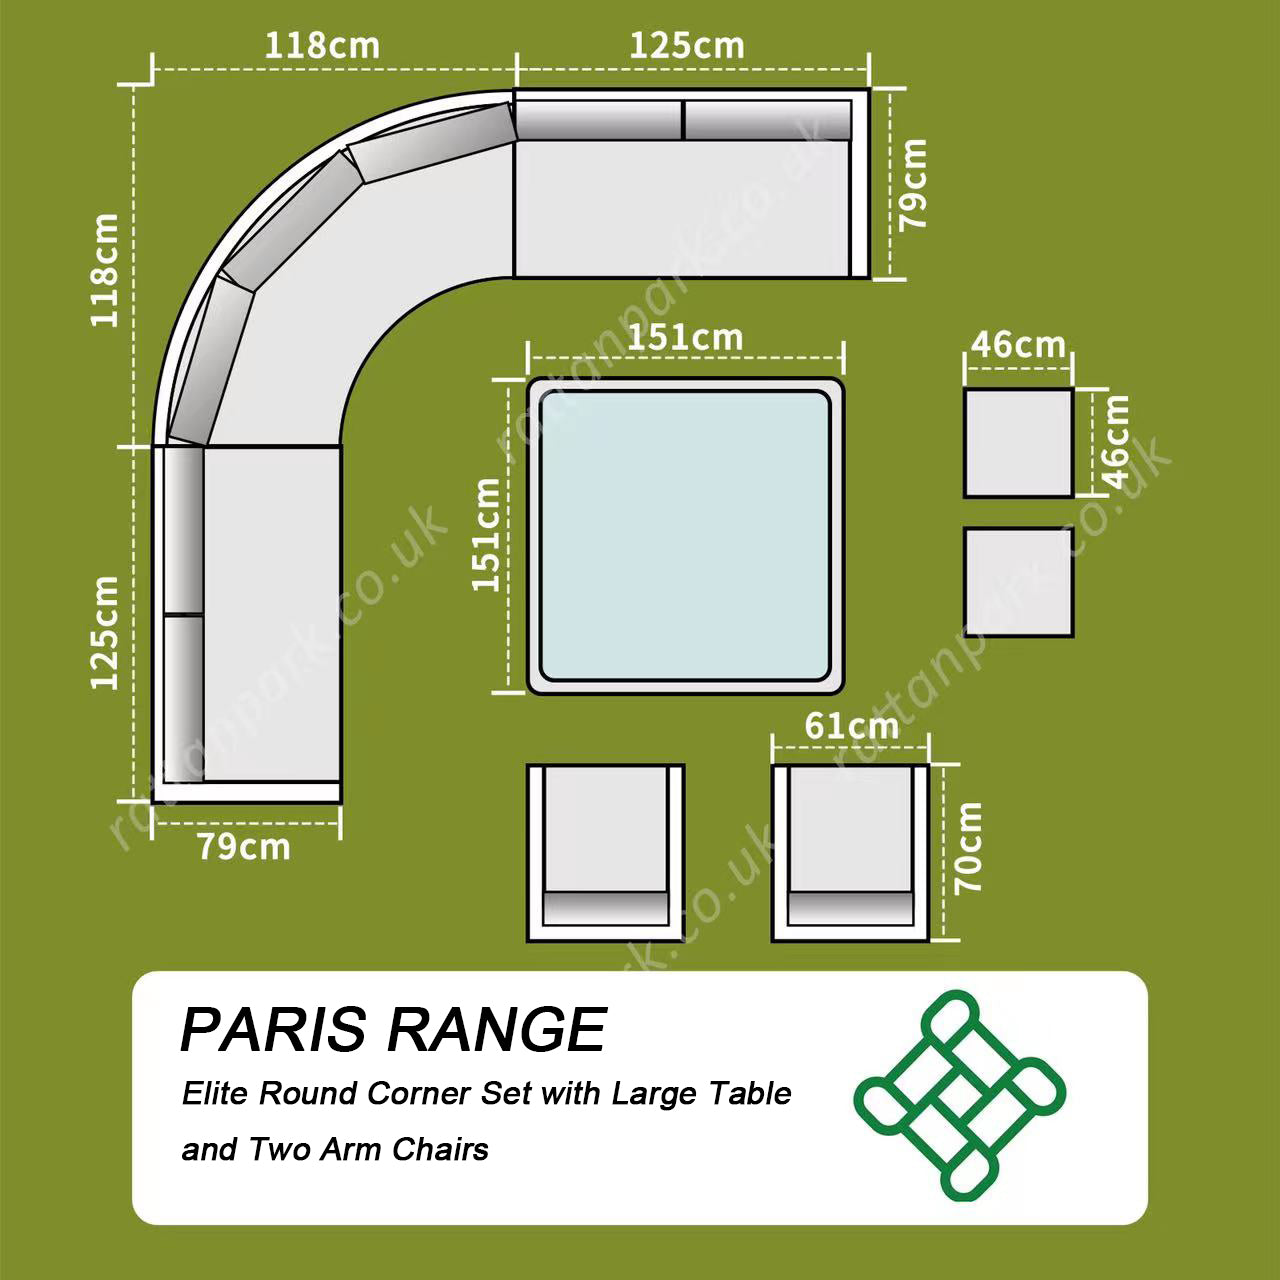 Rattan Park Paris Range Aluminium Elite Round Corner Sofa Set with Large Table in Natural Weave (RO130)